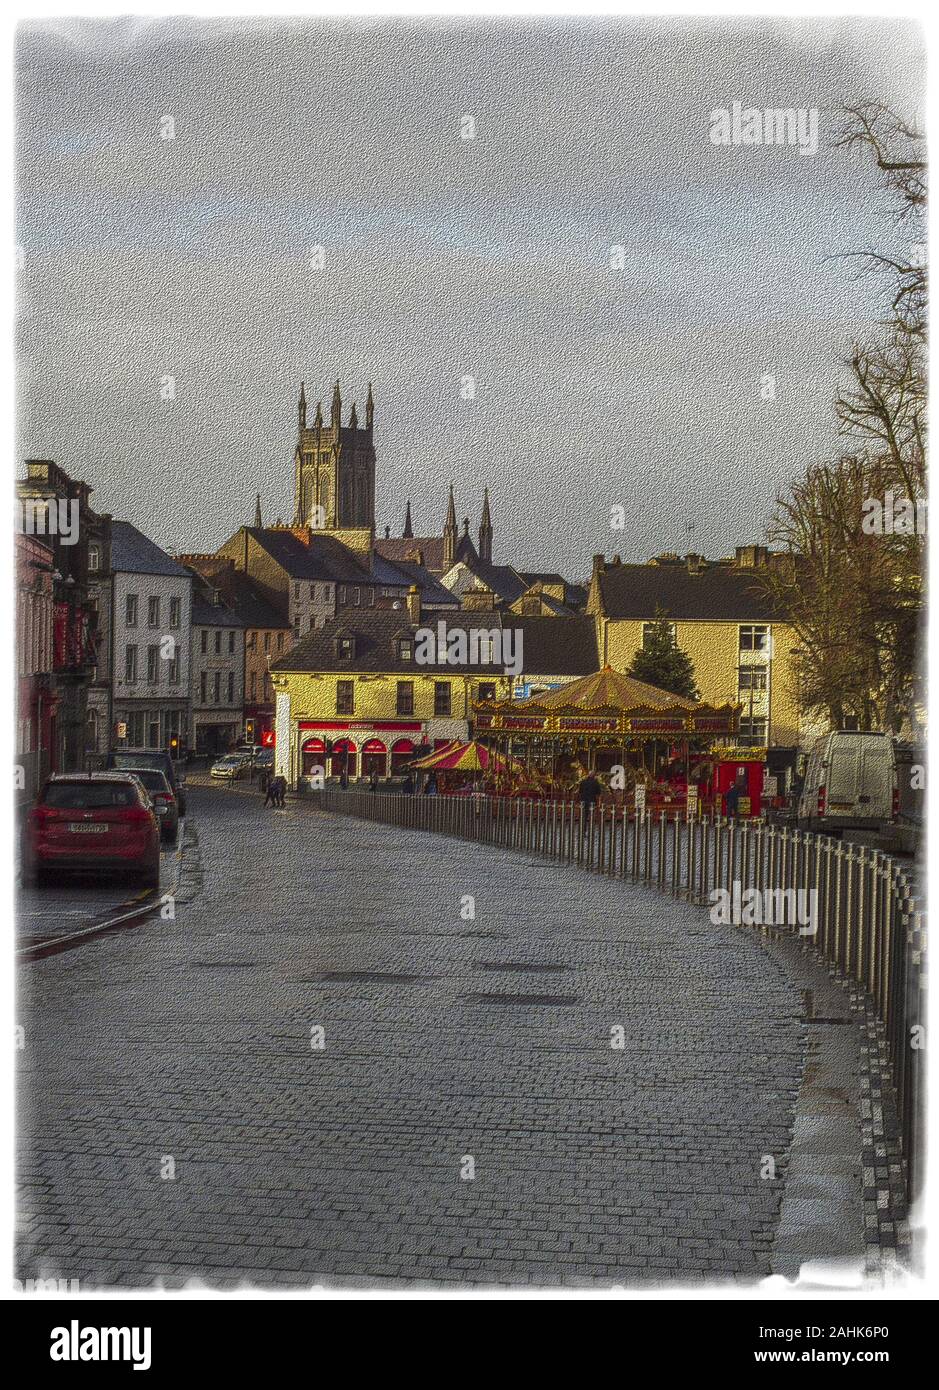 Bild von einer Straße in der Stadt Kilkenny in Irland. Stockfoto